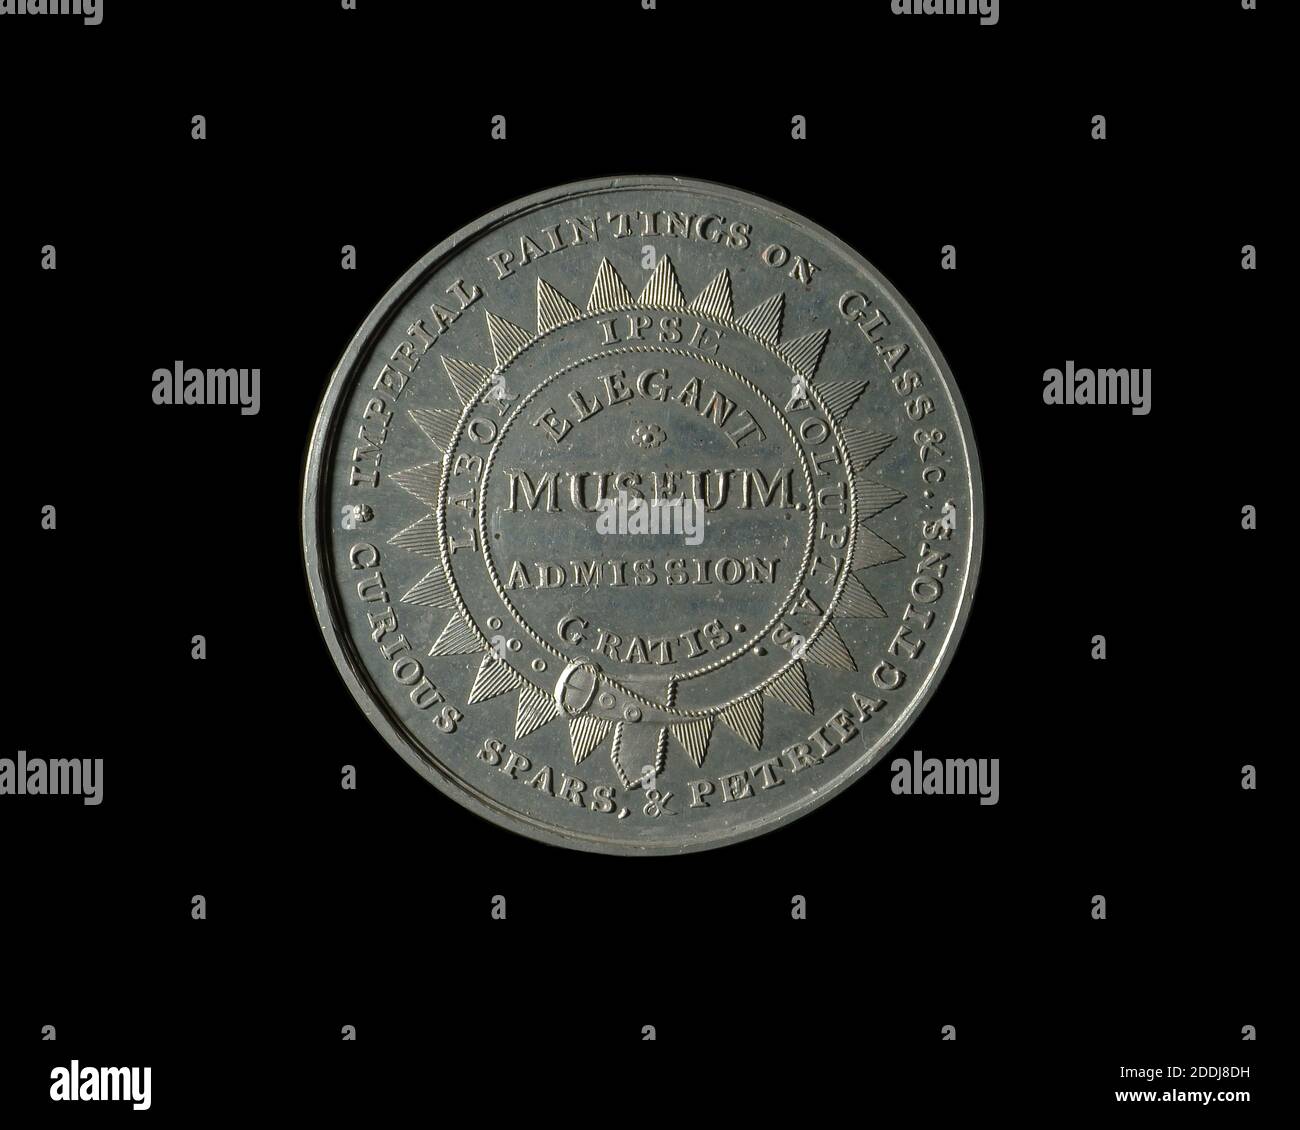 Image inversée Médaille de la publicité du XIXe siècle, Musée Bisset, Birmingham, Numismatique, Médaille, histoire de Birmingham, Publicité Banque D'Images